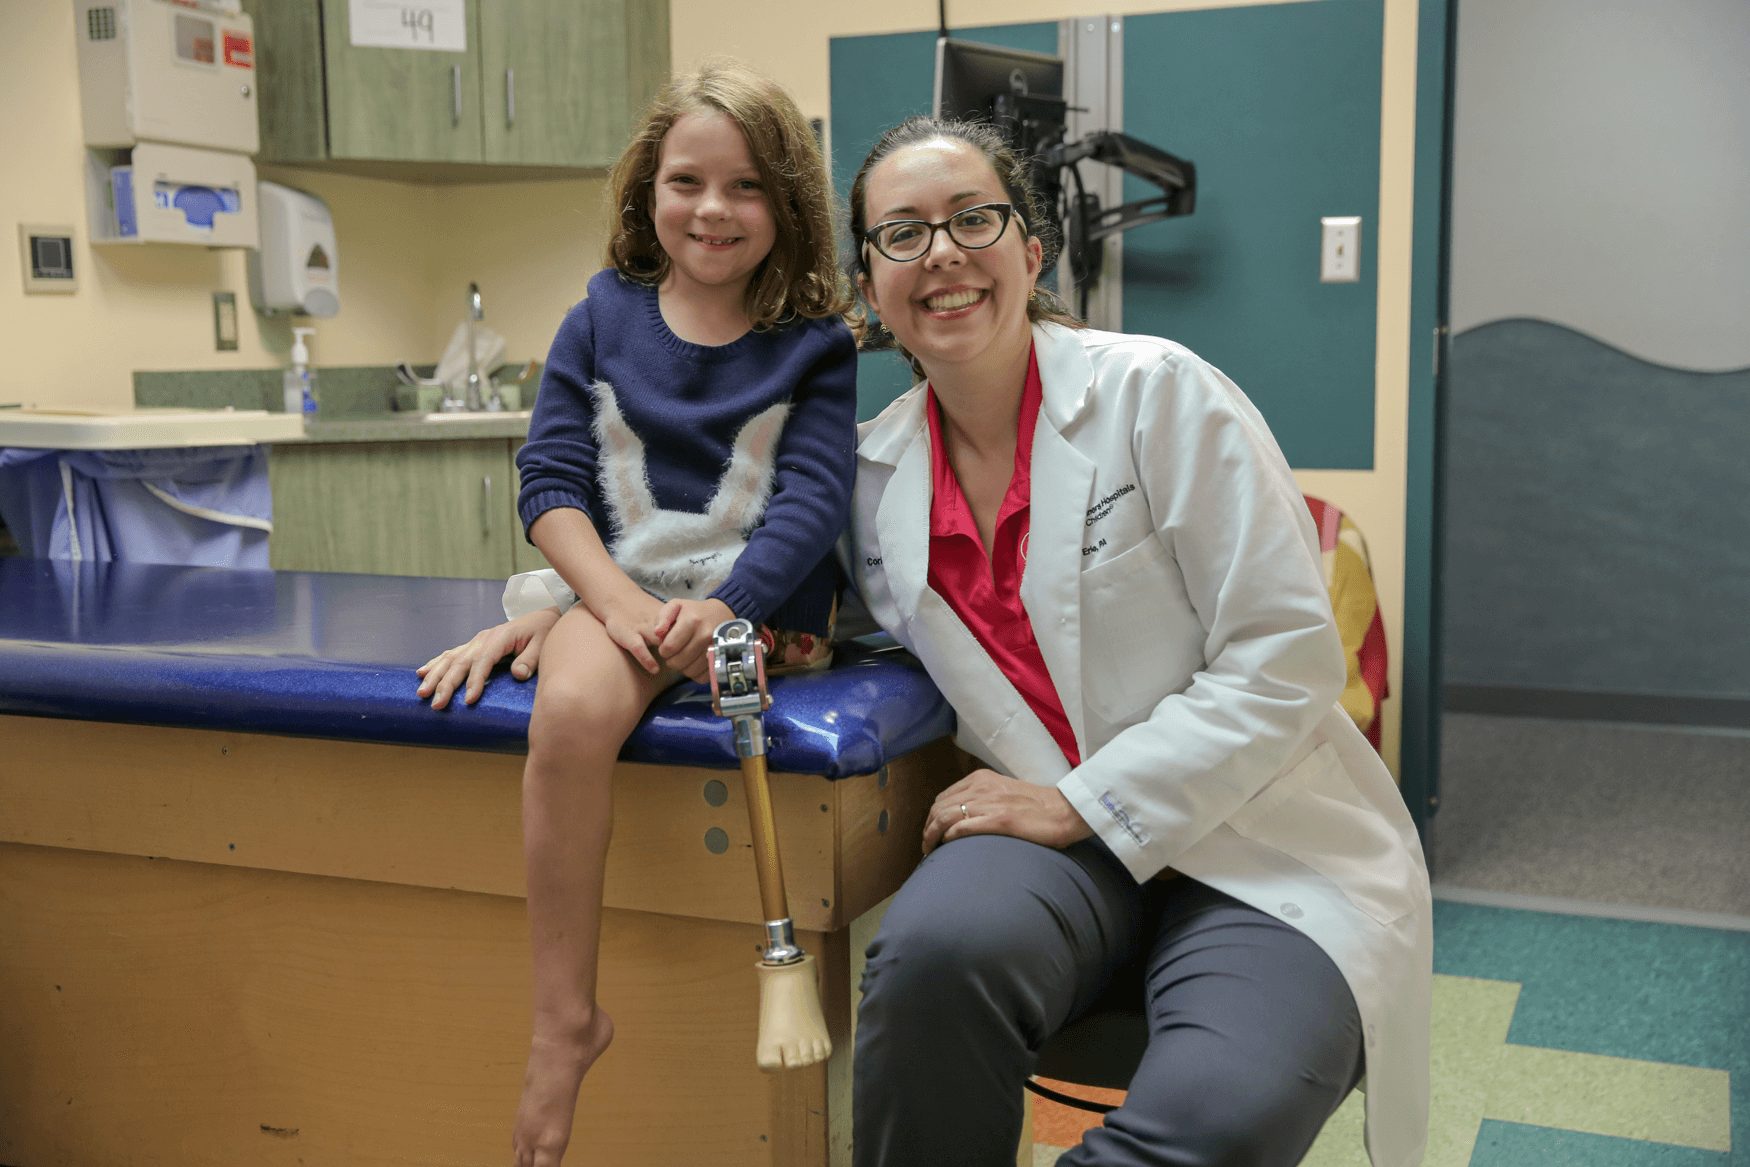 Girl Shriners patient with prosthetic leg smiles alongside female doctor